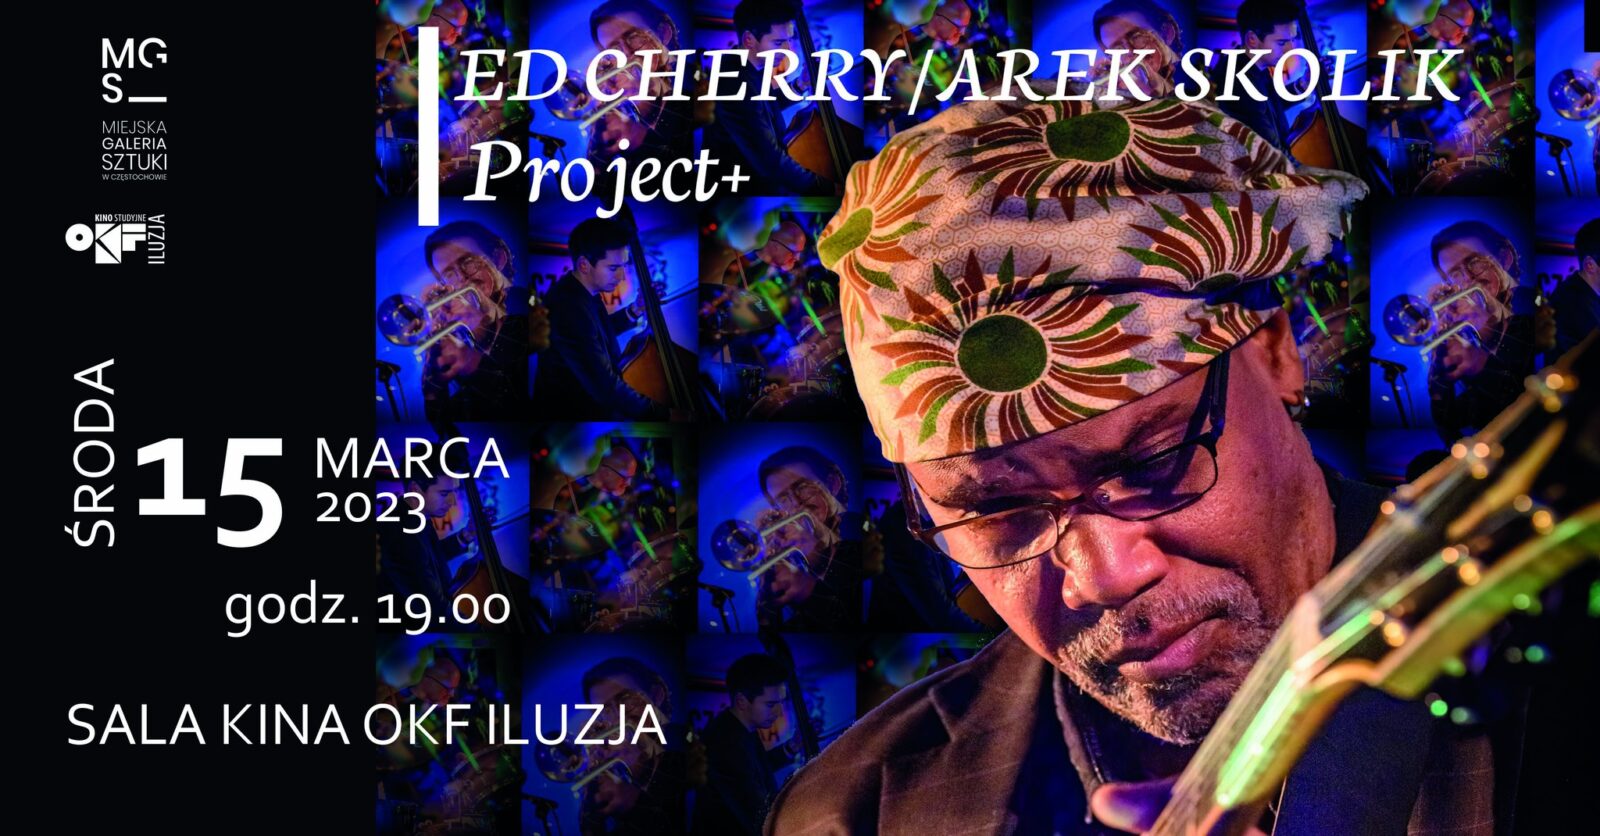 Szykuje się wydarzenie! Na częstochowskiej scenie Ed Cherry i Arek Skolik Projects+ 1